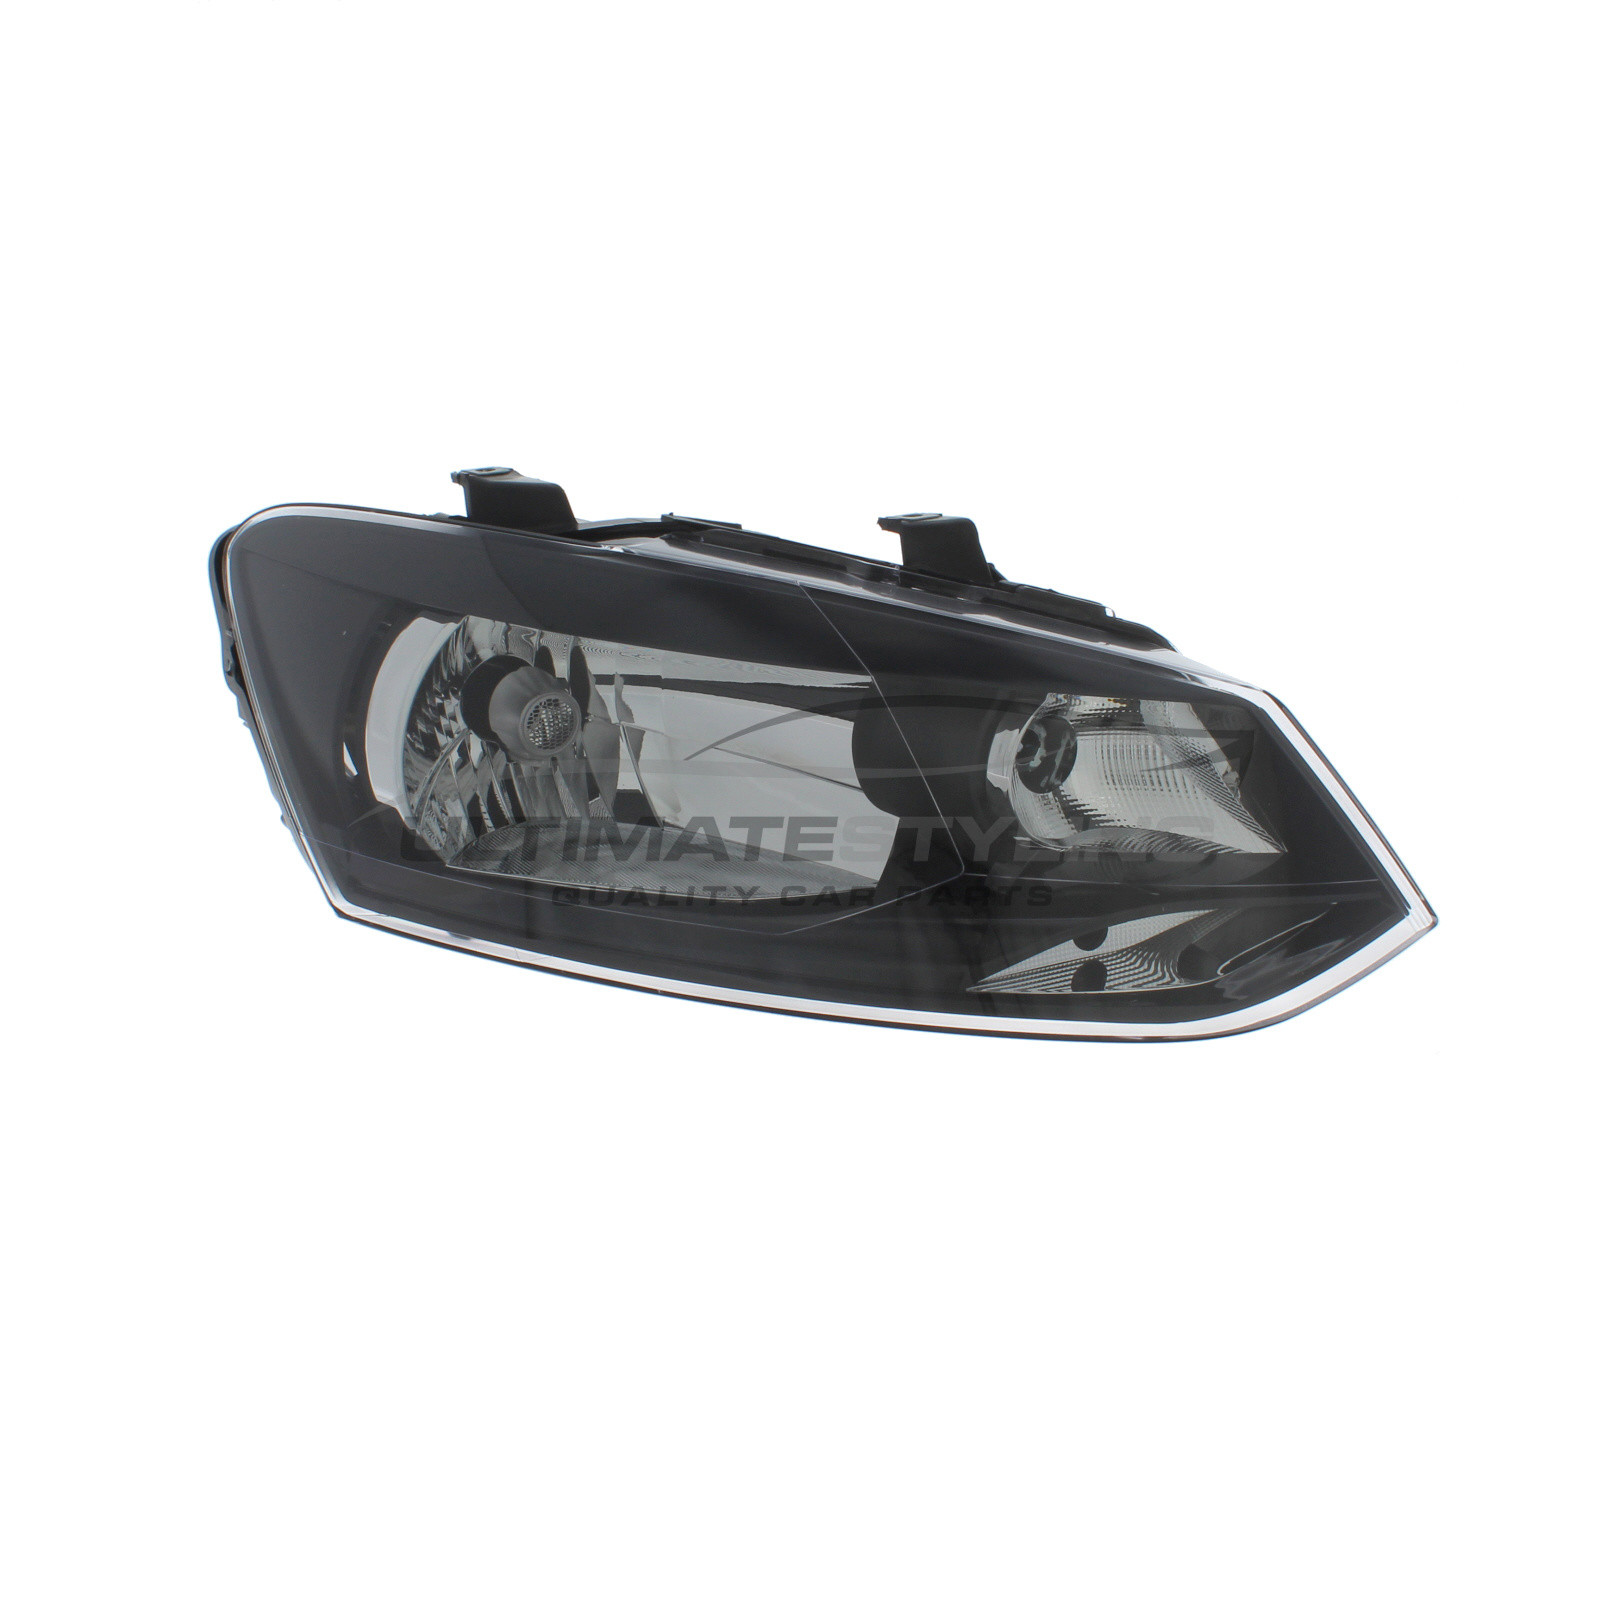 Headlight / Headlamp for VW Polo